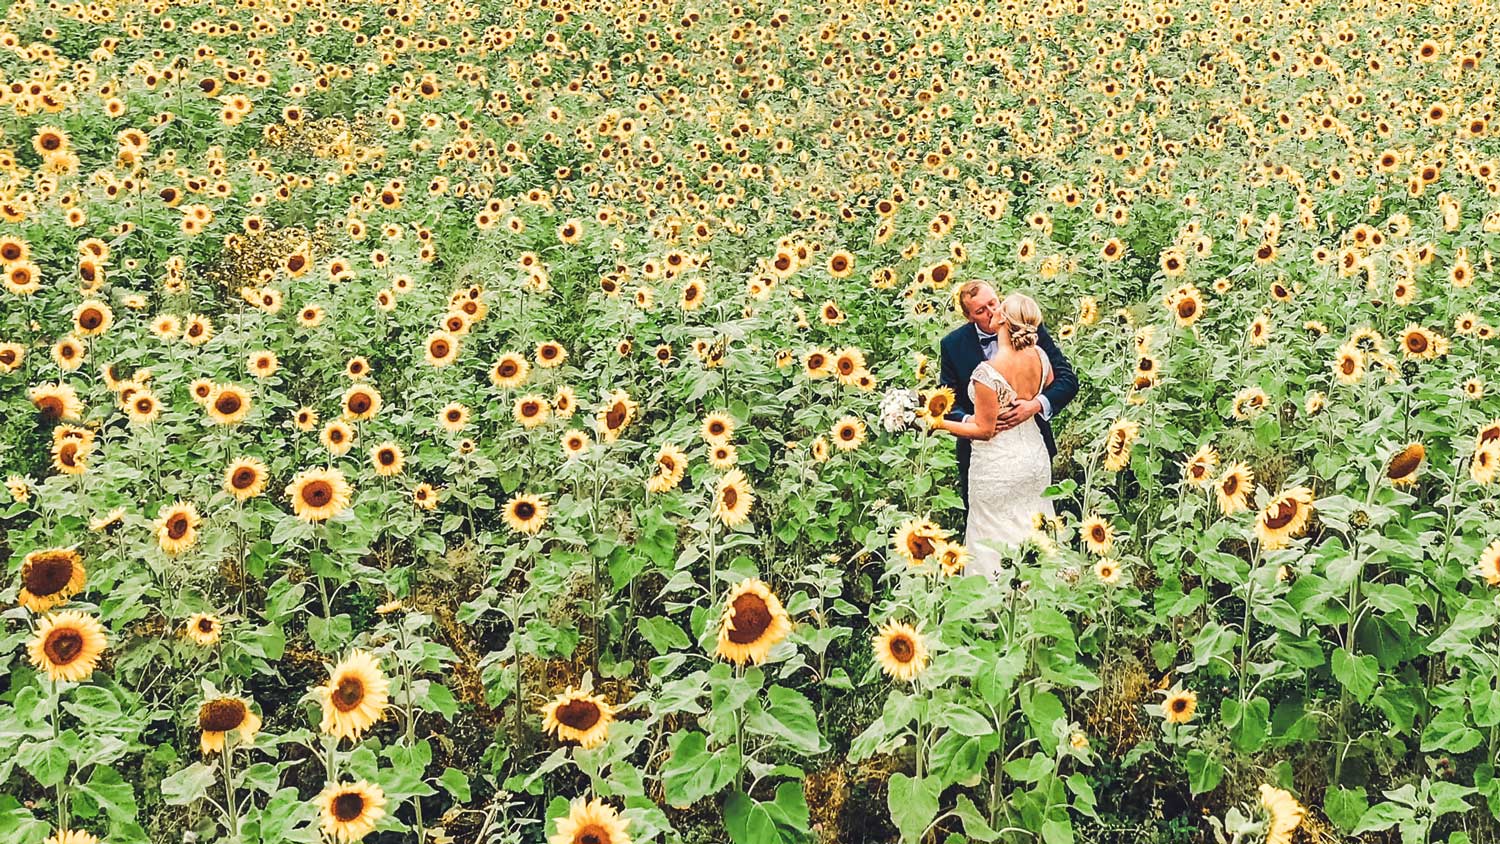 Pruutpaar päevalillepõllul pulma fotograaf ja videograaf oulma